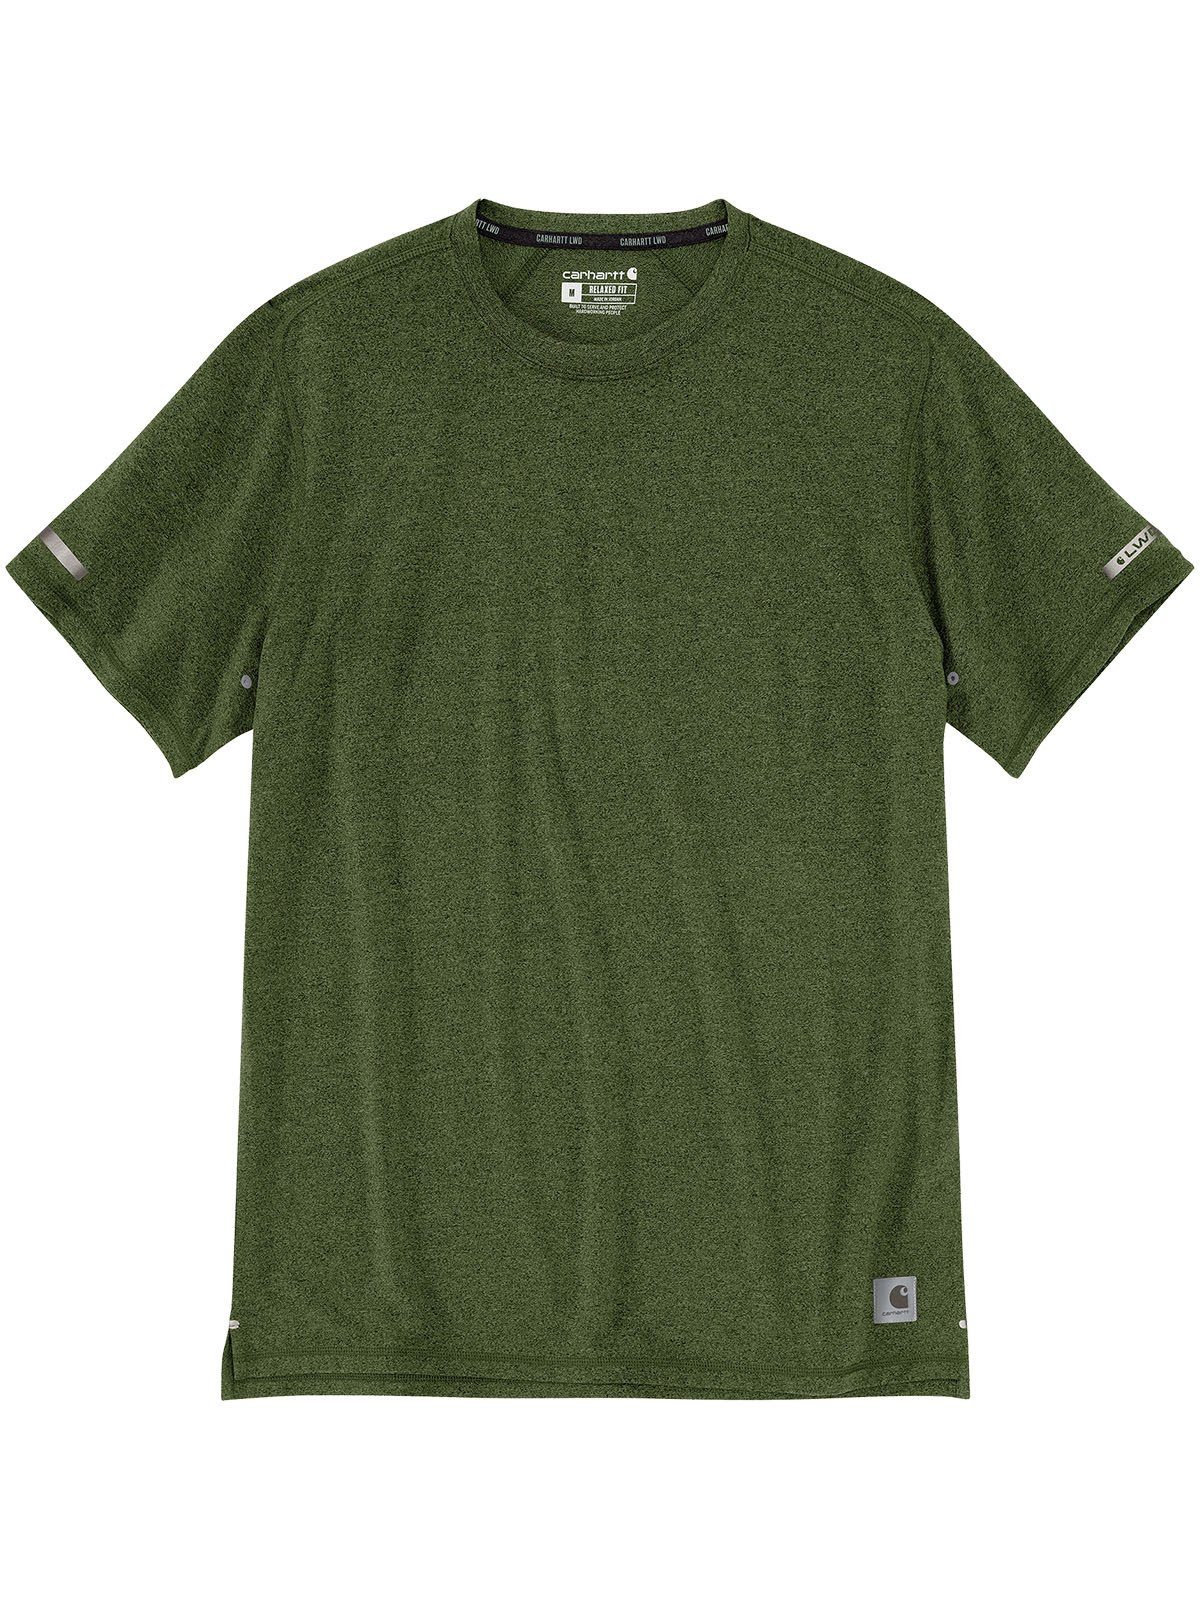 Carhartt T-Shirt 105858-GD4 Carhartt Relaxedfit chive heather